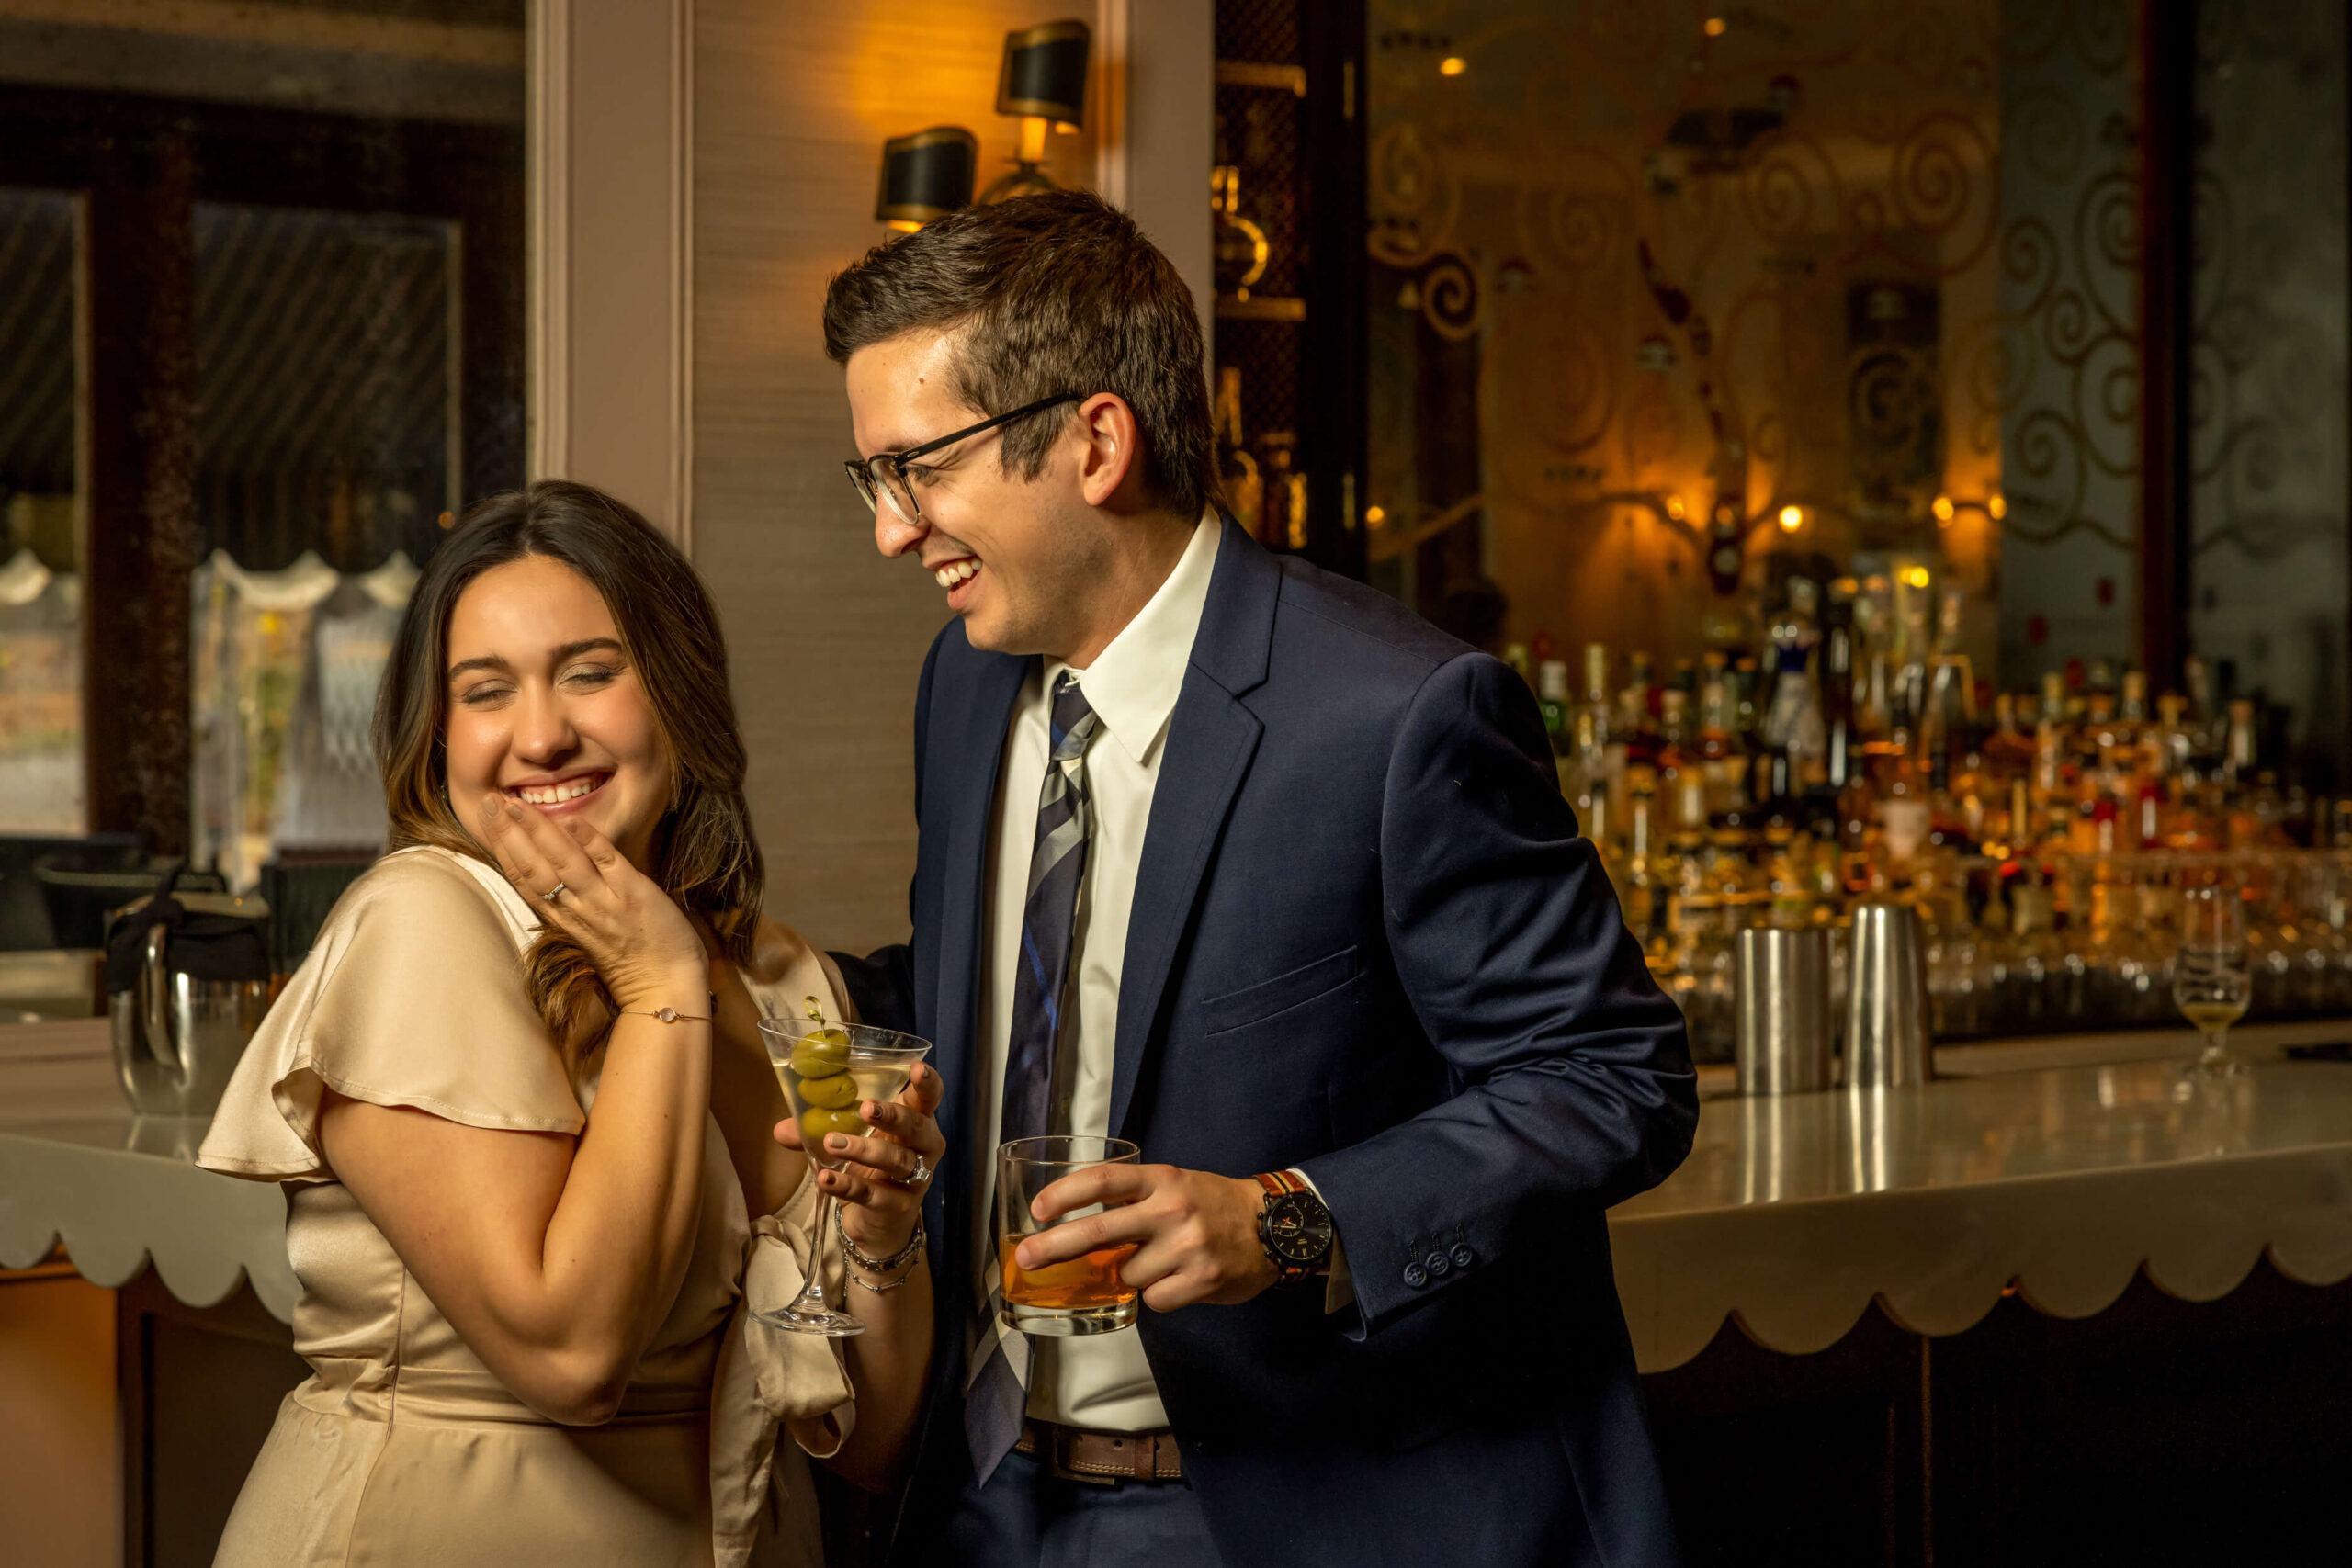 man and woman flirting at bar and sharing cocktails